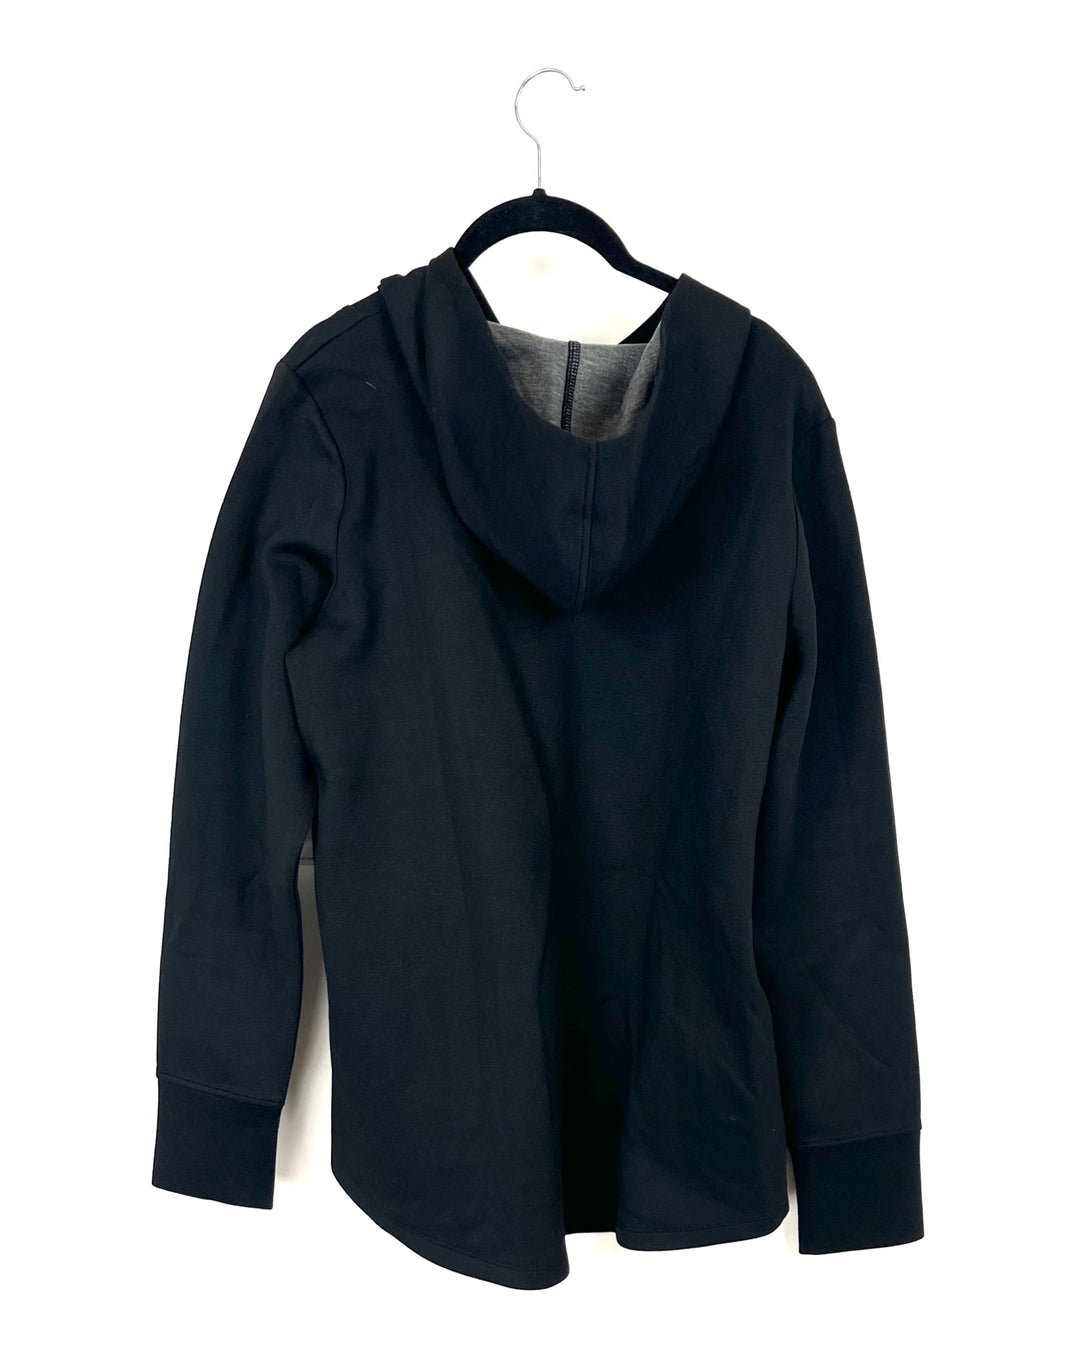 Black Asymmetrical Zip Up Jacket - Size 6/8